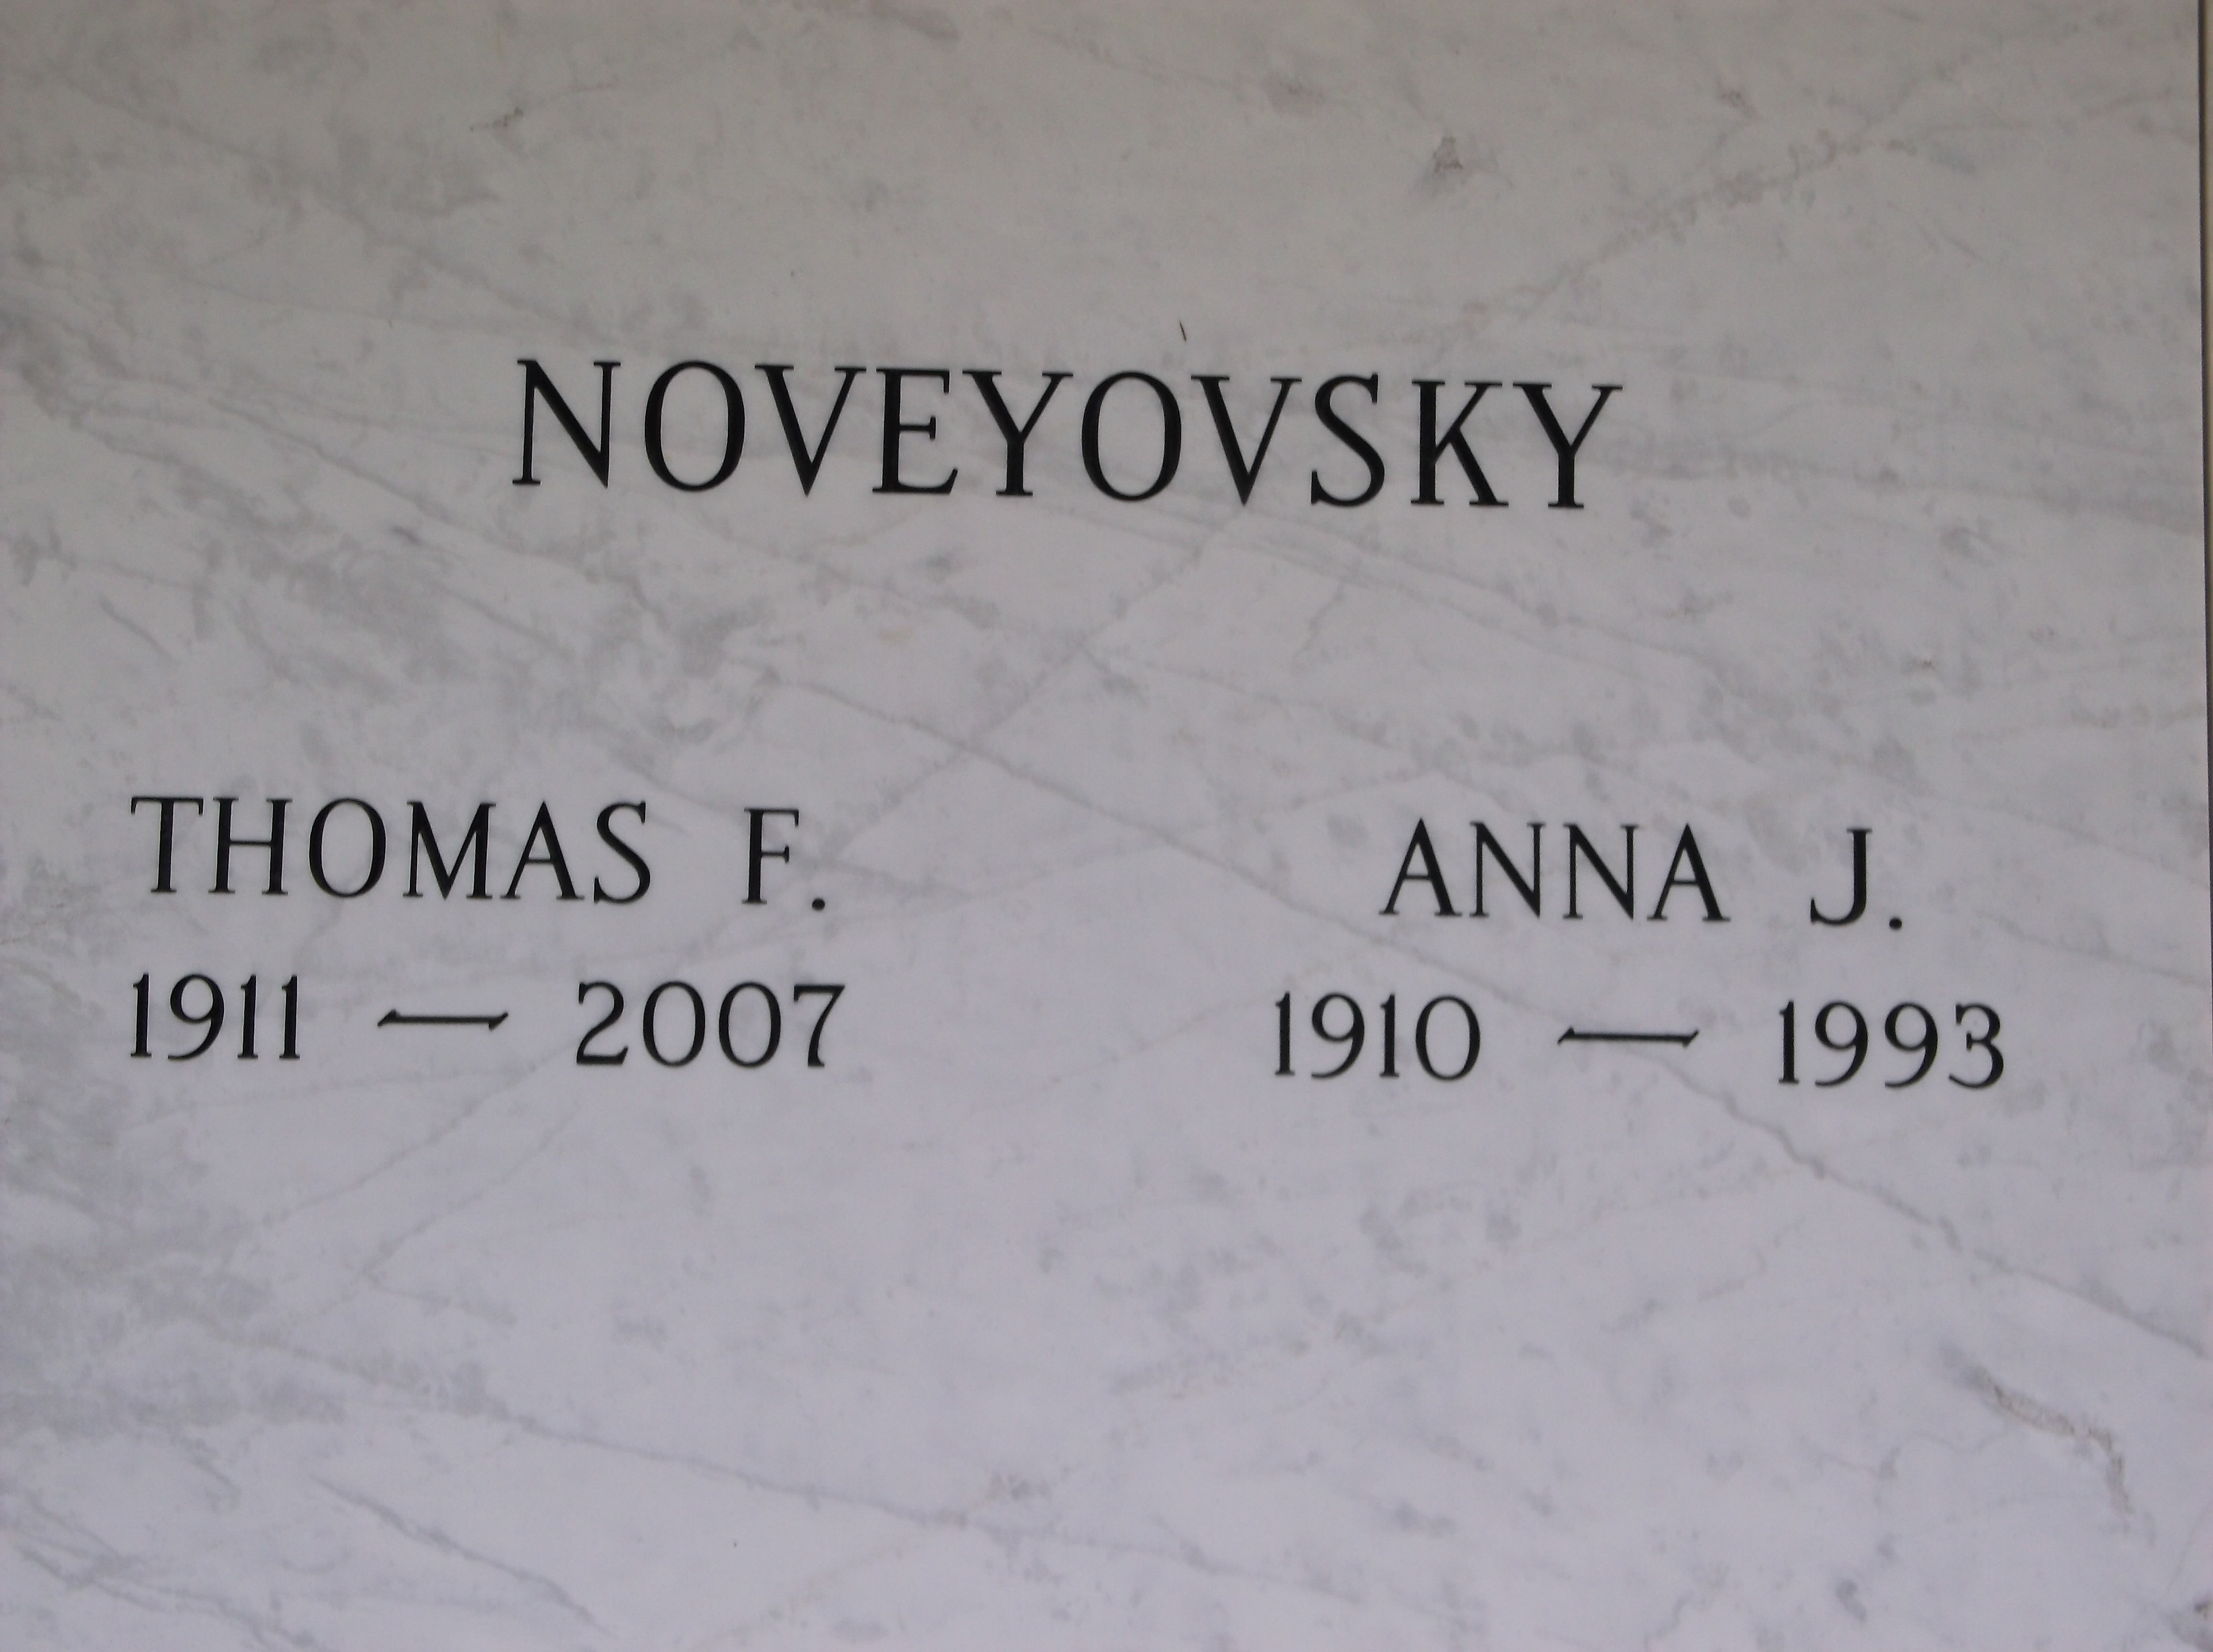 Thomas F Noveyovsky